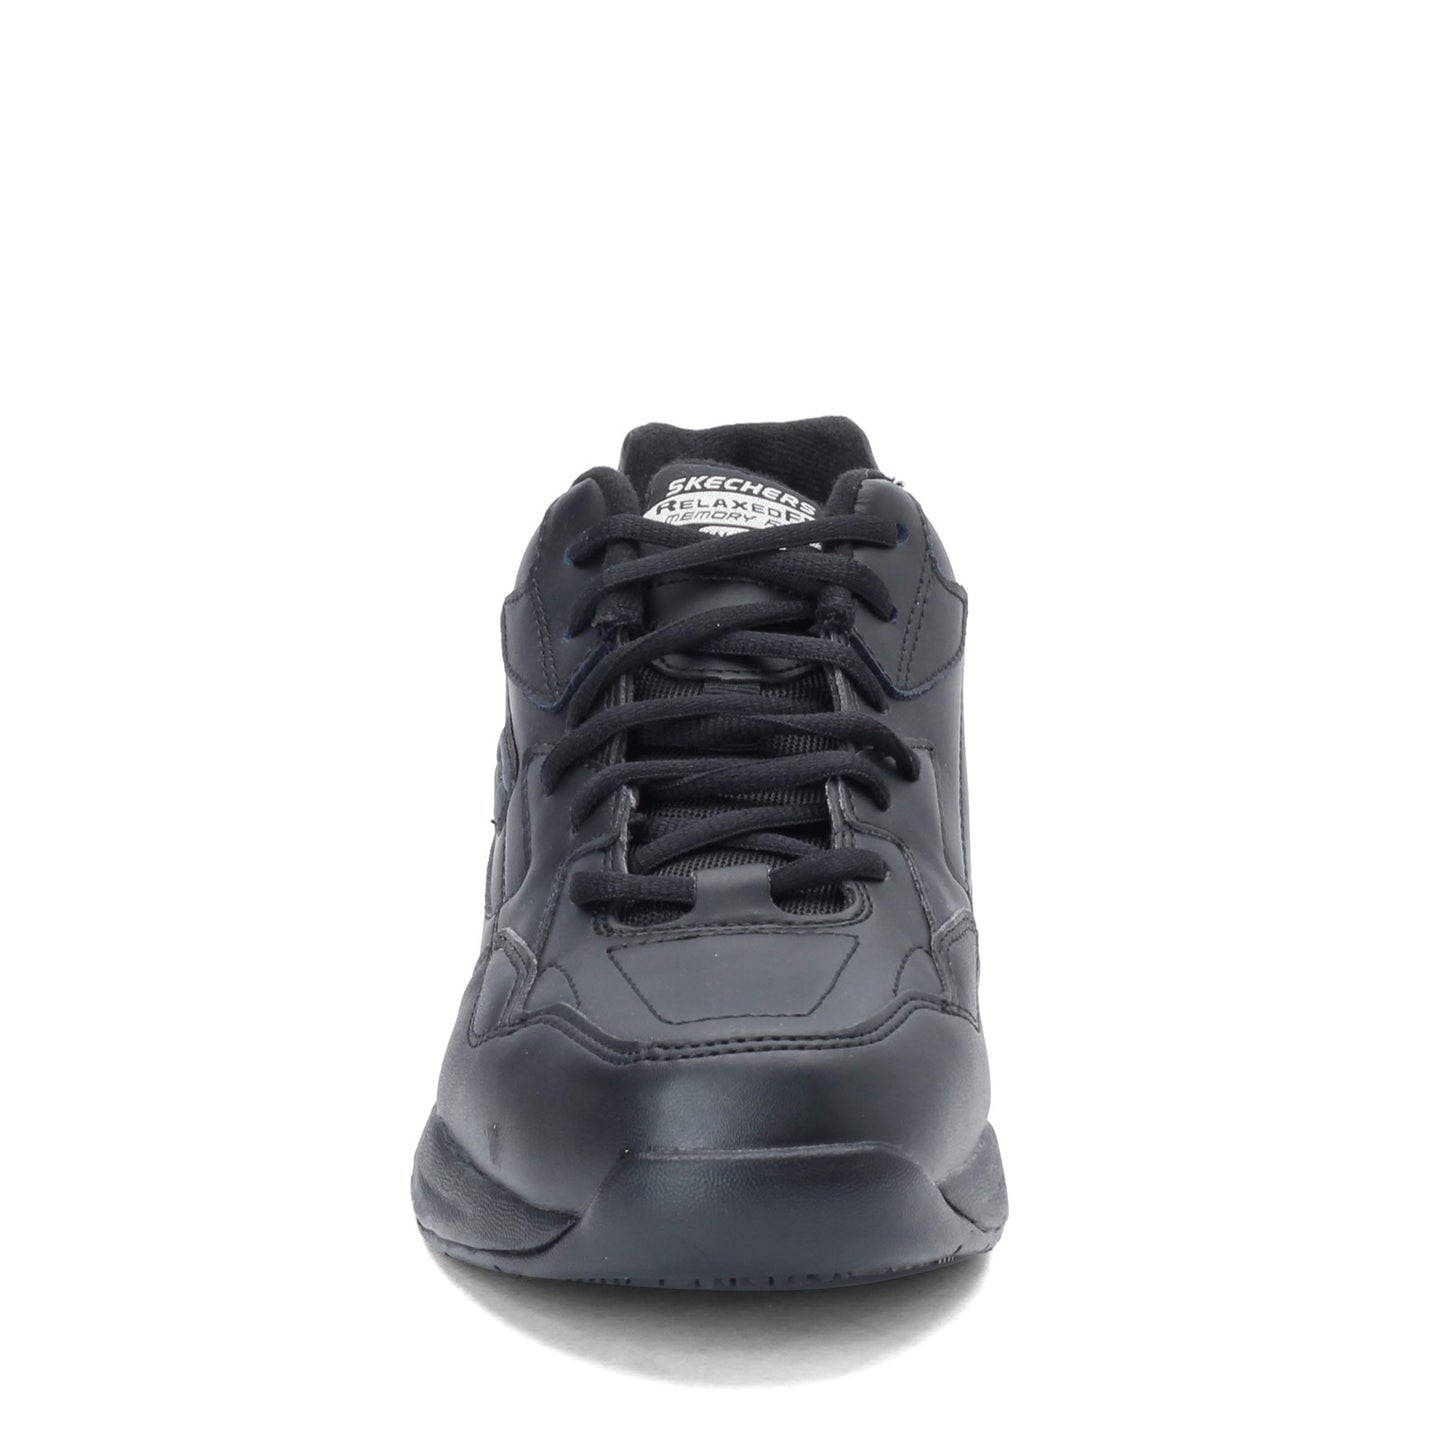 Peltz Shoes  Men's Skechers Work Relaxed Fit: Felton - Altair Sneaker - Wide Width BLACK 77032EW-BLK